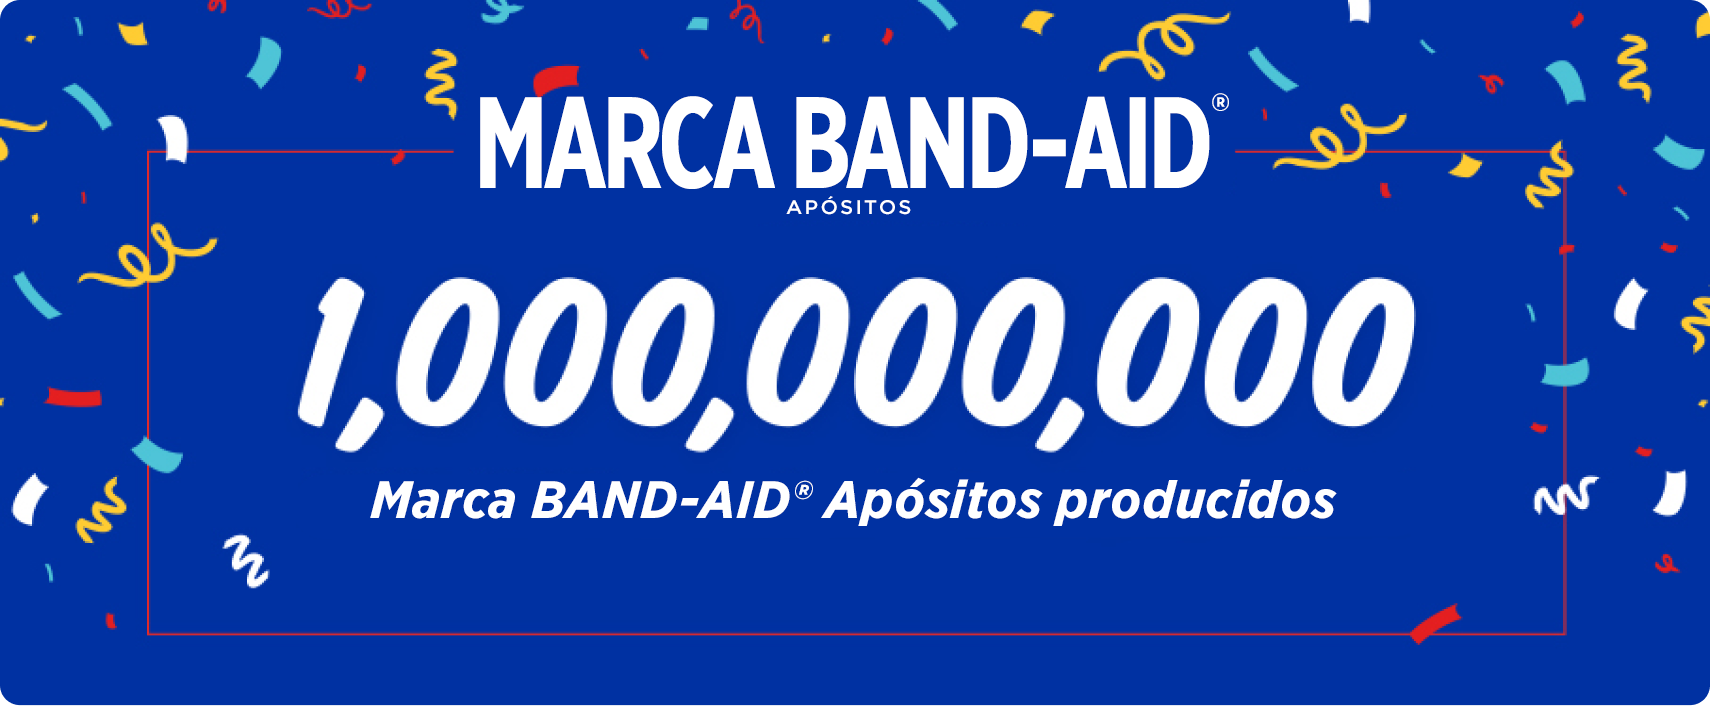 Cartel que celebra la producción del Marca BAND-AID® Apósito número 1,000 millones.